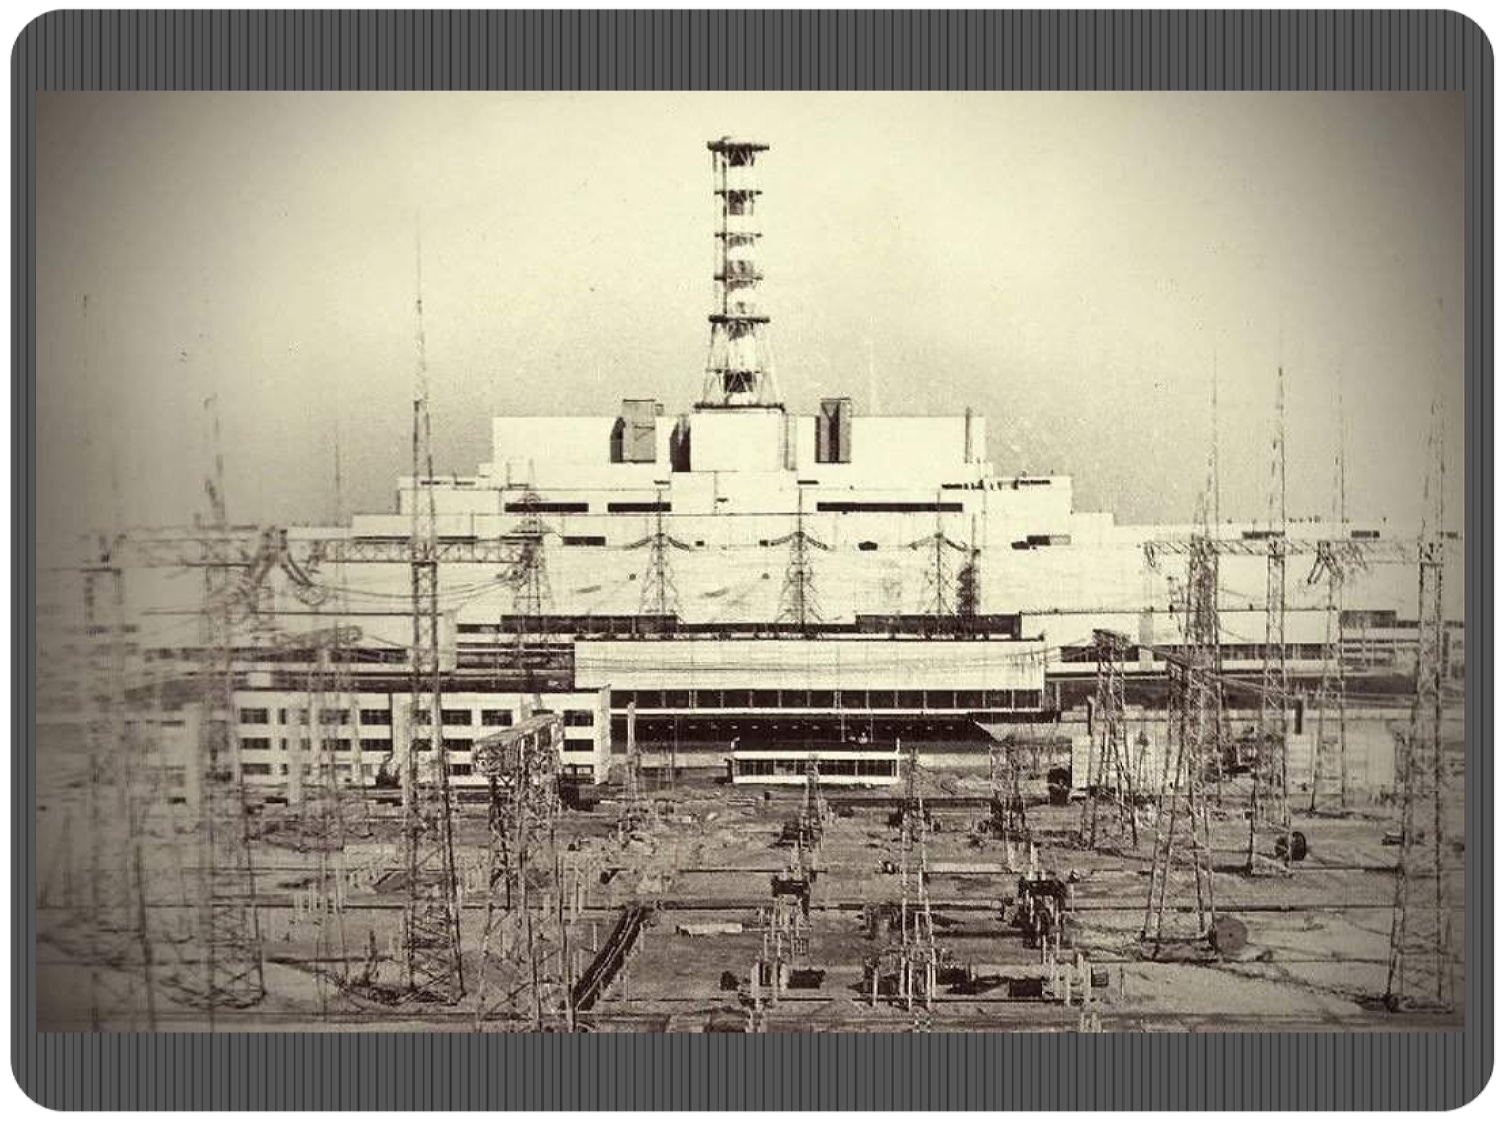 Черно аэс. Атомная электростанция Чернобыль 4 энергоблок. Чернобыль до аварии ЧАЭС. Чернобыльская АЭС 1986 реактор. Припять до катастрофы на Чернобыльской АЭС.